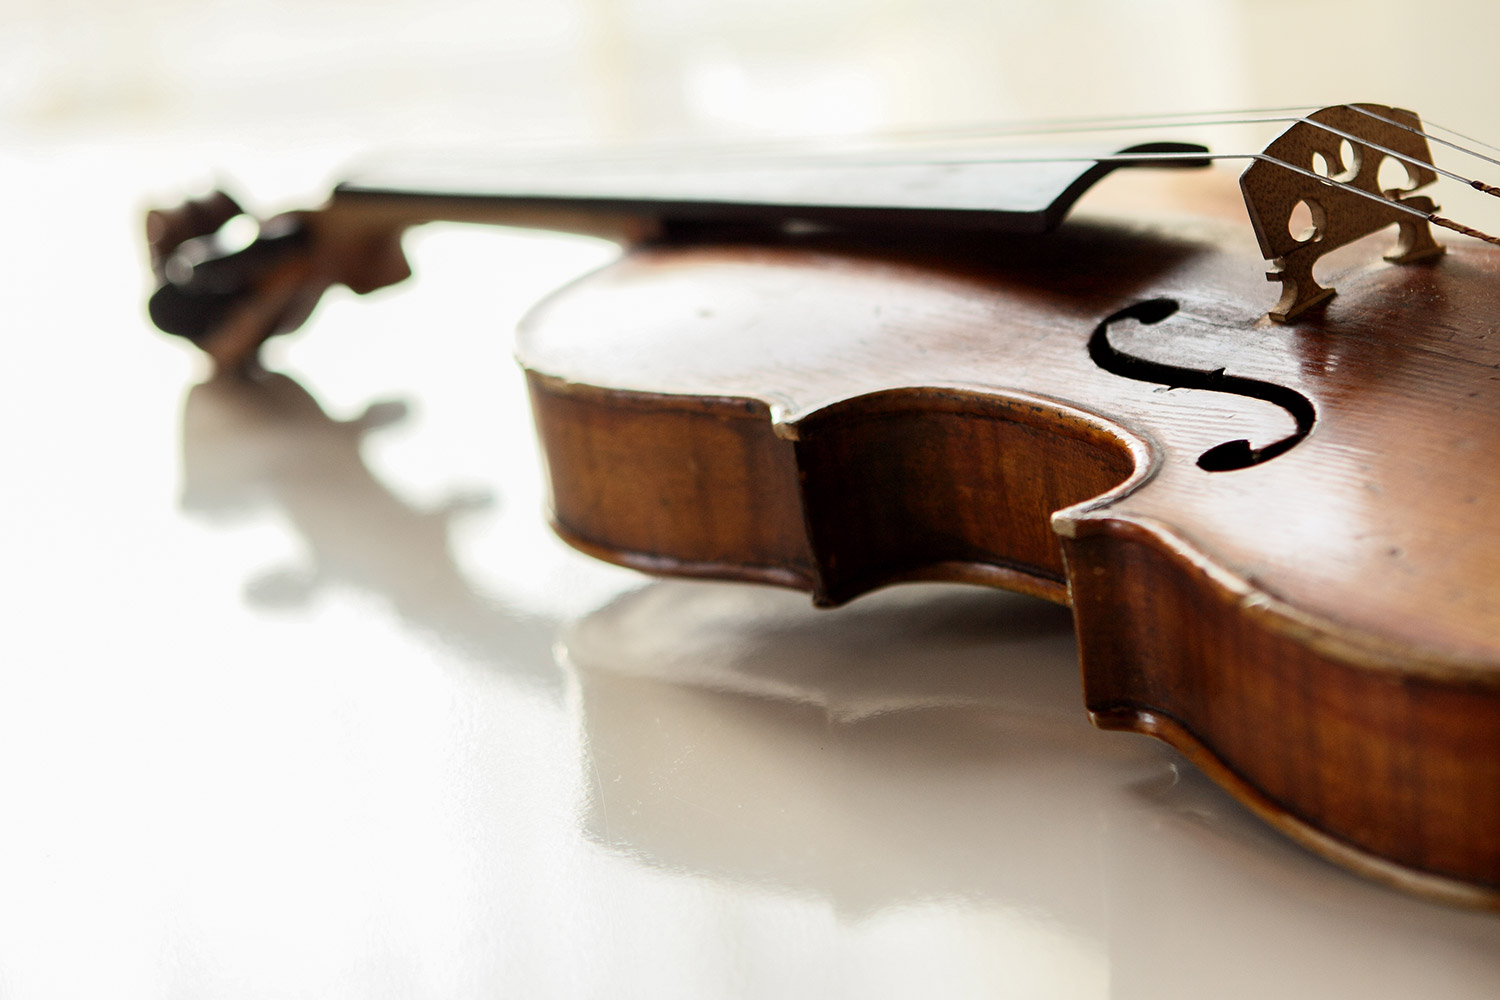 Cours de violon à domicile